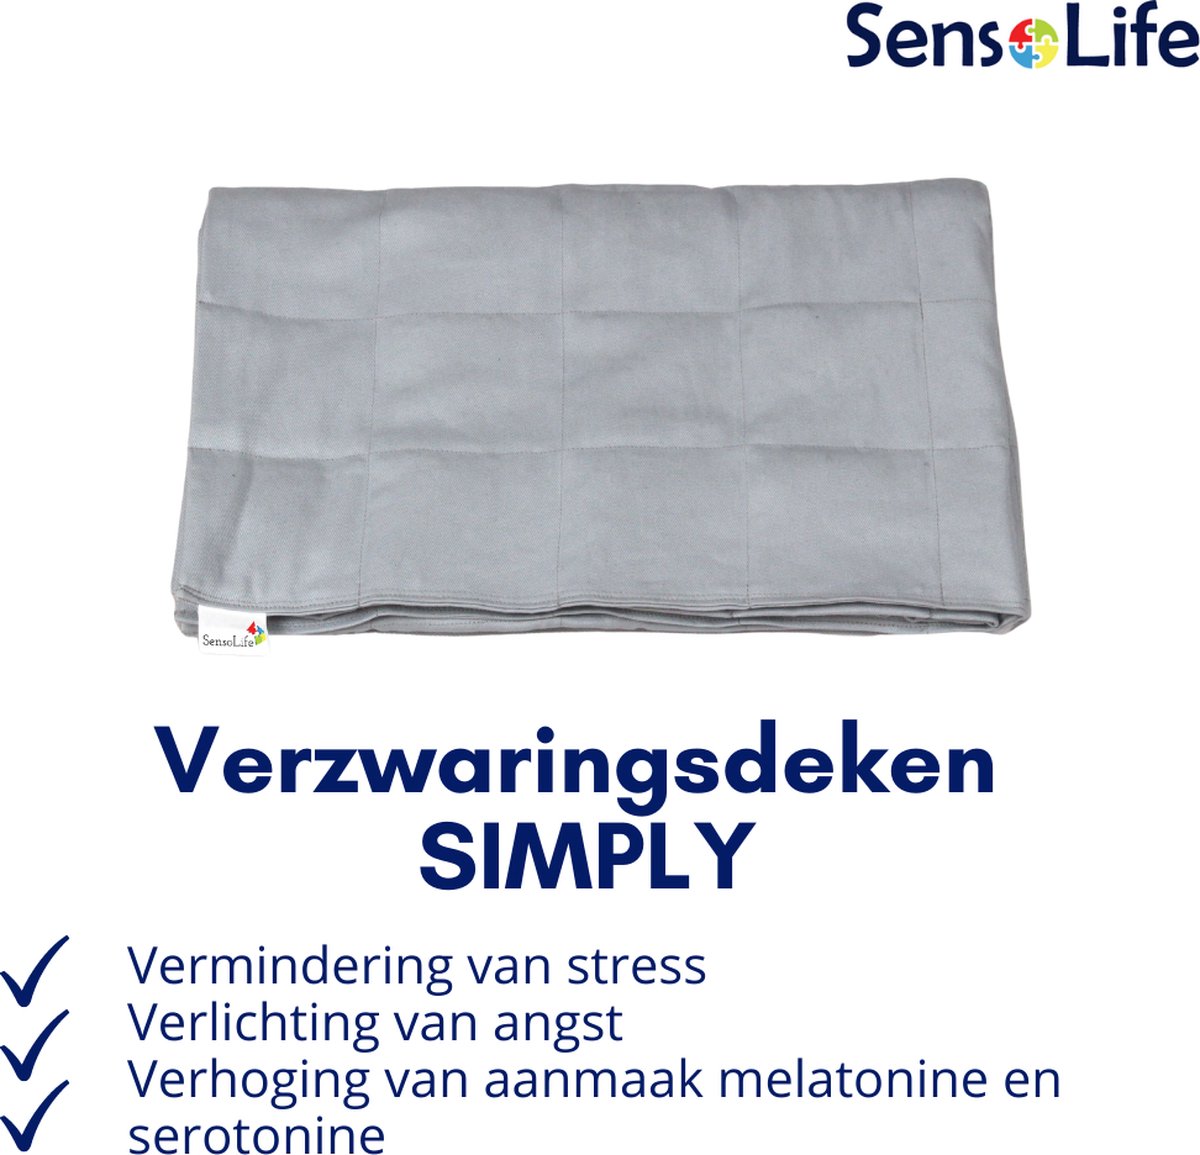 SensoLife SIMPLY - 14 kg - 220 x 240 cm - 100% coton - Couverture